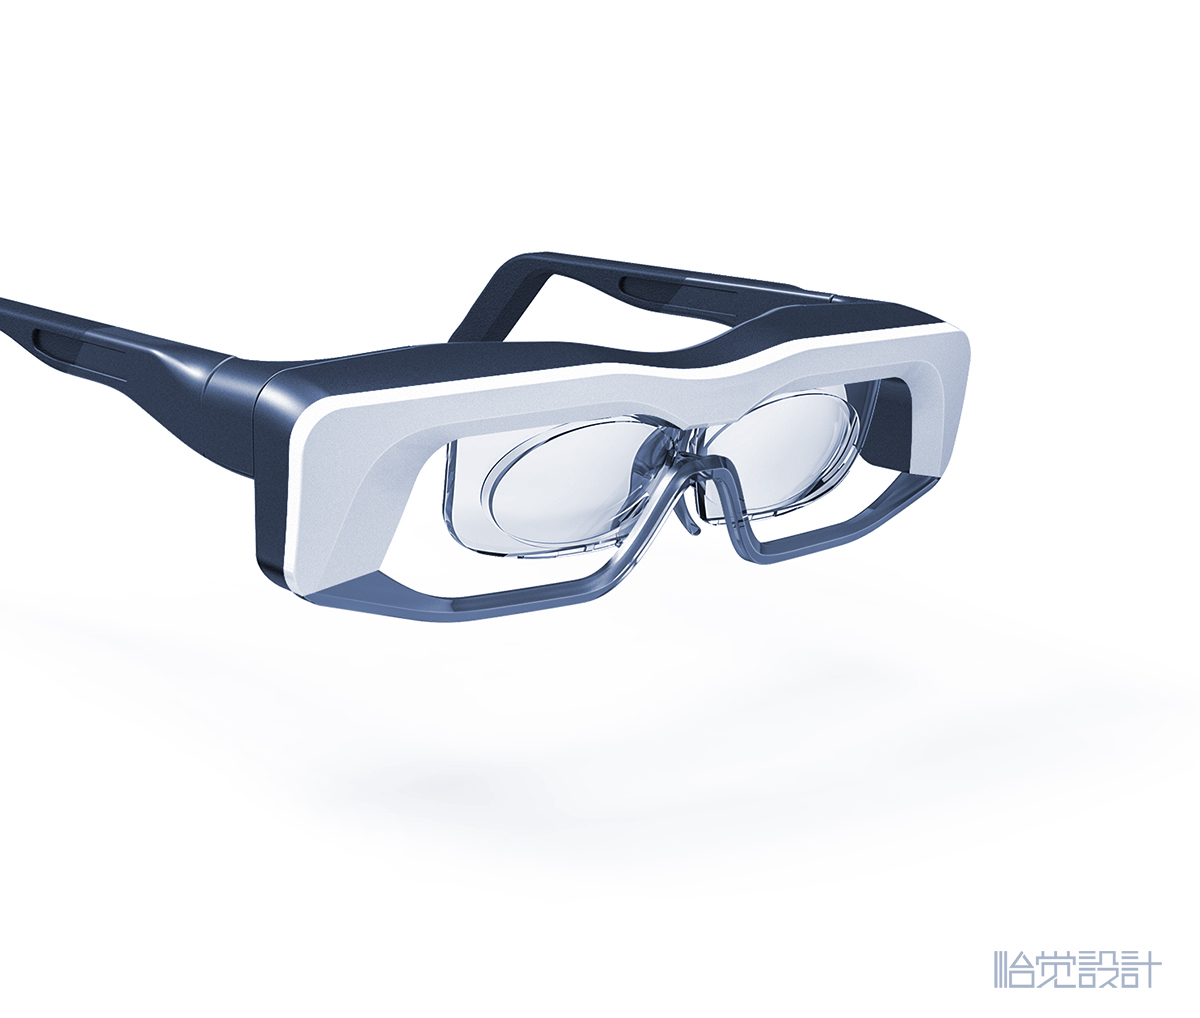 缓解近视眼镜-AR眼镜-智能眼镜-治疗眼镜-穿戴产品-怡觉设计 (1).jpg